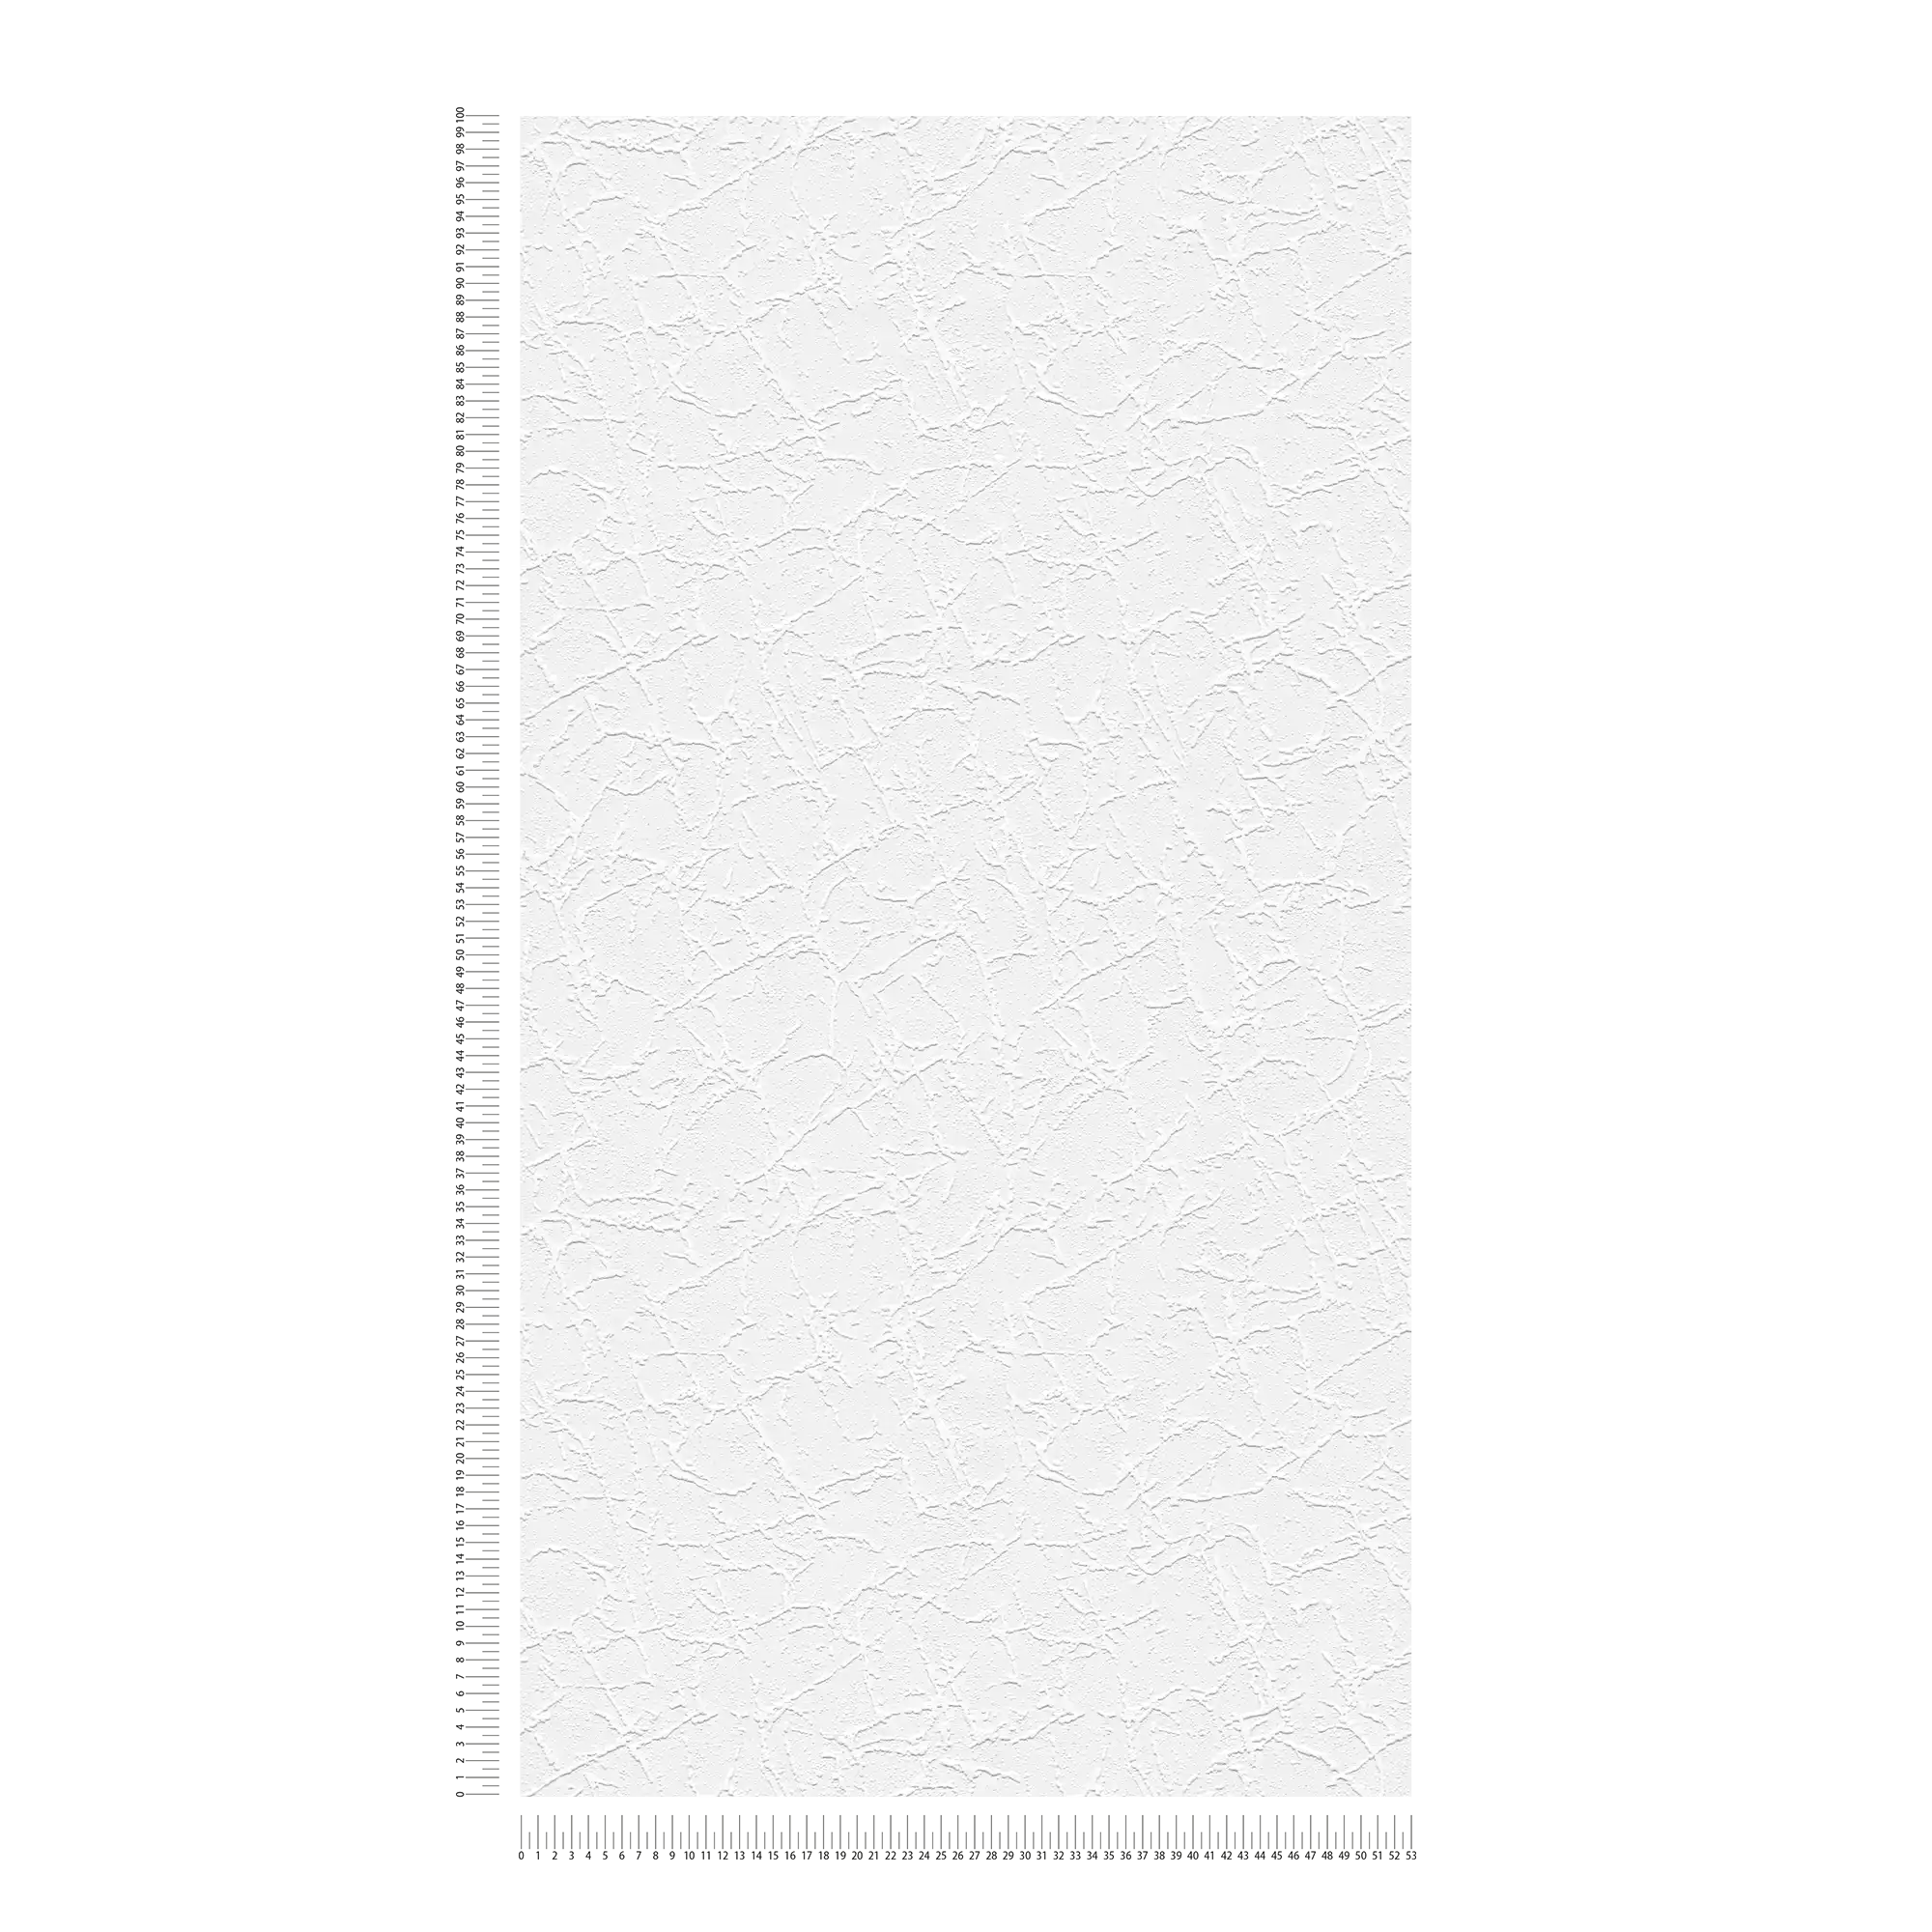             spatola per carta da parati in cartongesso modello struttura in gesso - bianco
        